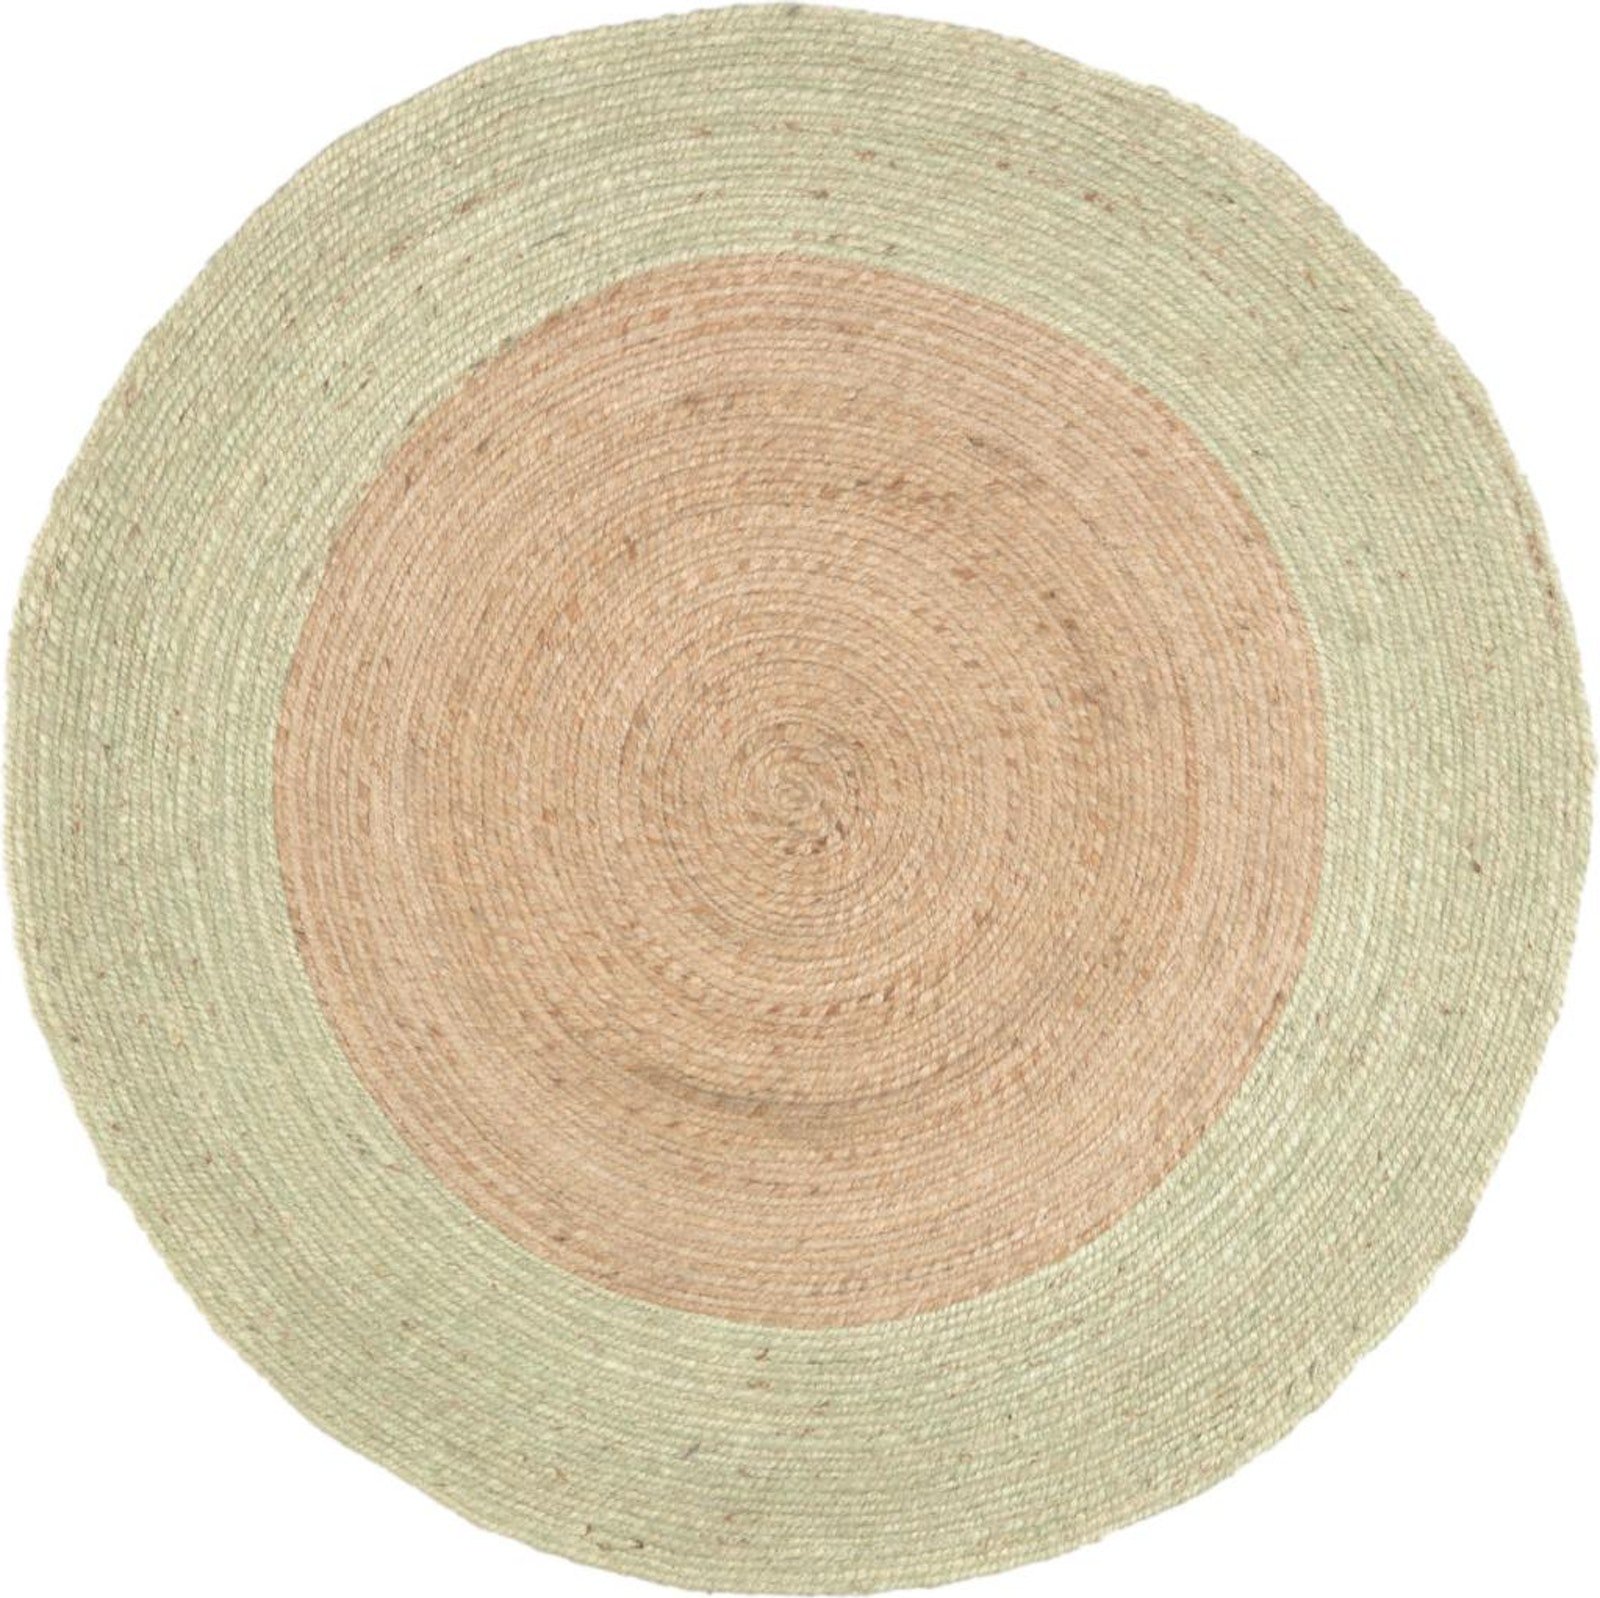 7: Adabel, Tæppe, naturlige fibre by LaForma (H: 1 cm. B: 120 cm. L: 120 cm., Natur/Grøn)